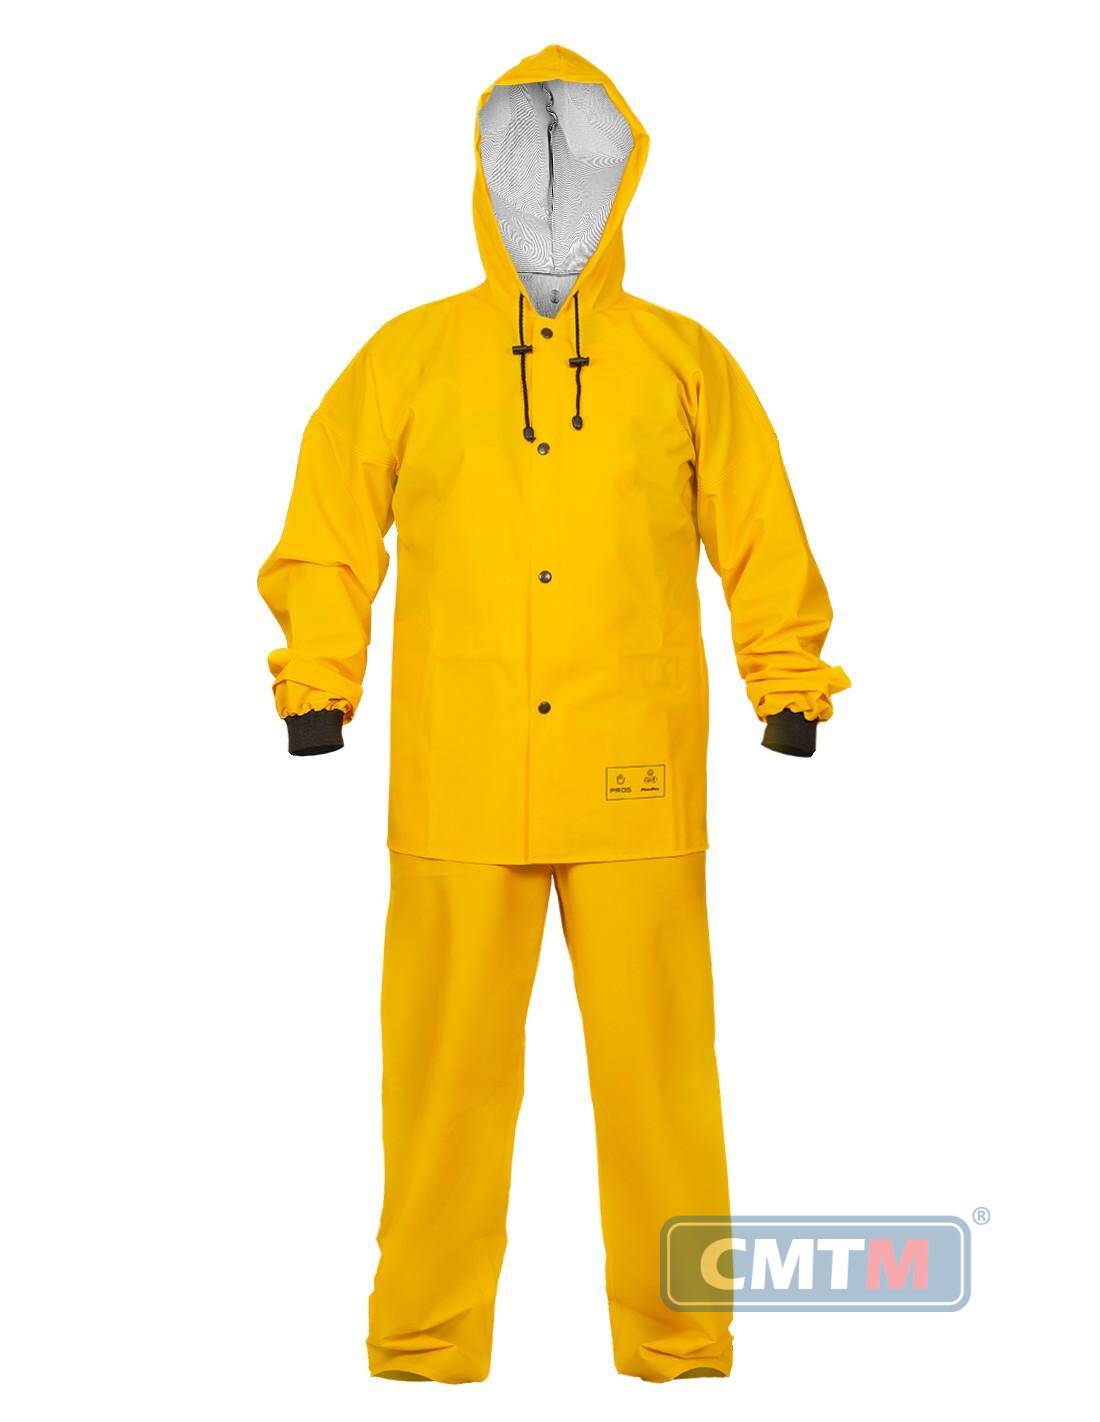 Ubranie wodoochronne AJ 101/001 żółte, rozmiar 58 XXL